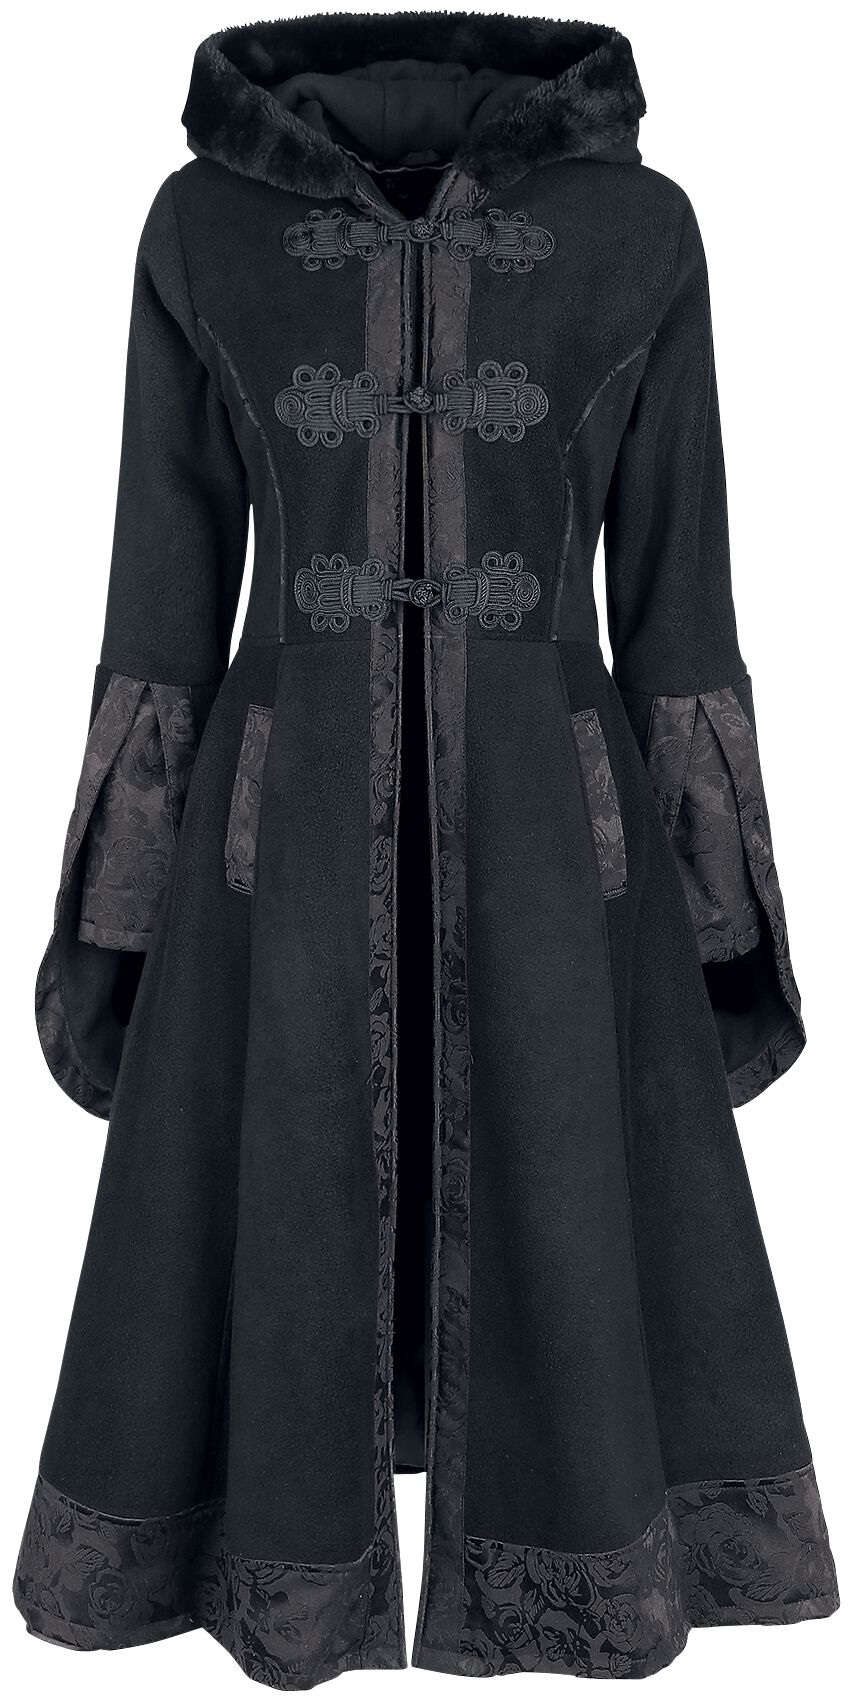 Poizen Industries Luella Coat Mantel schwarz in L